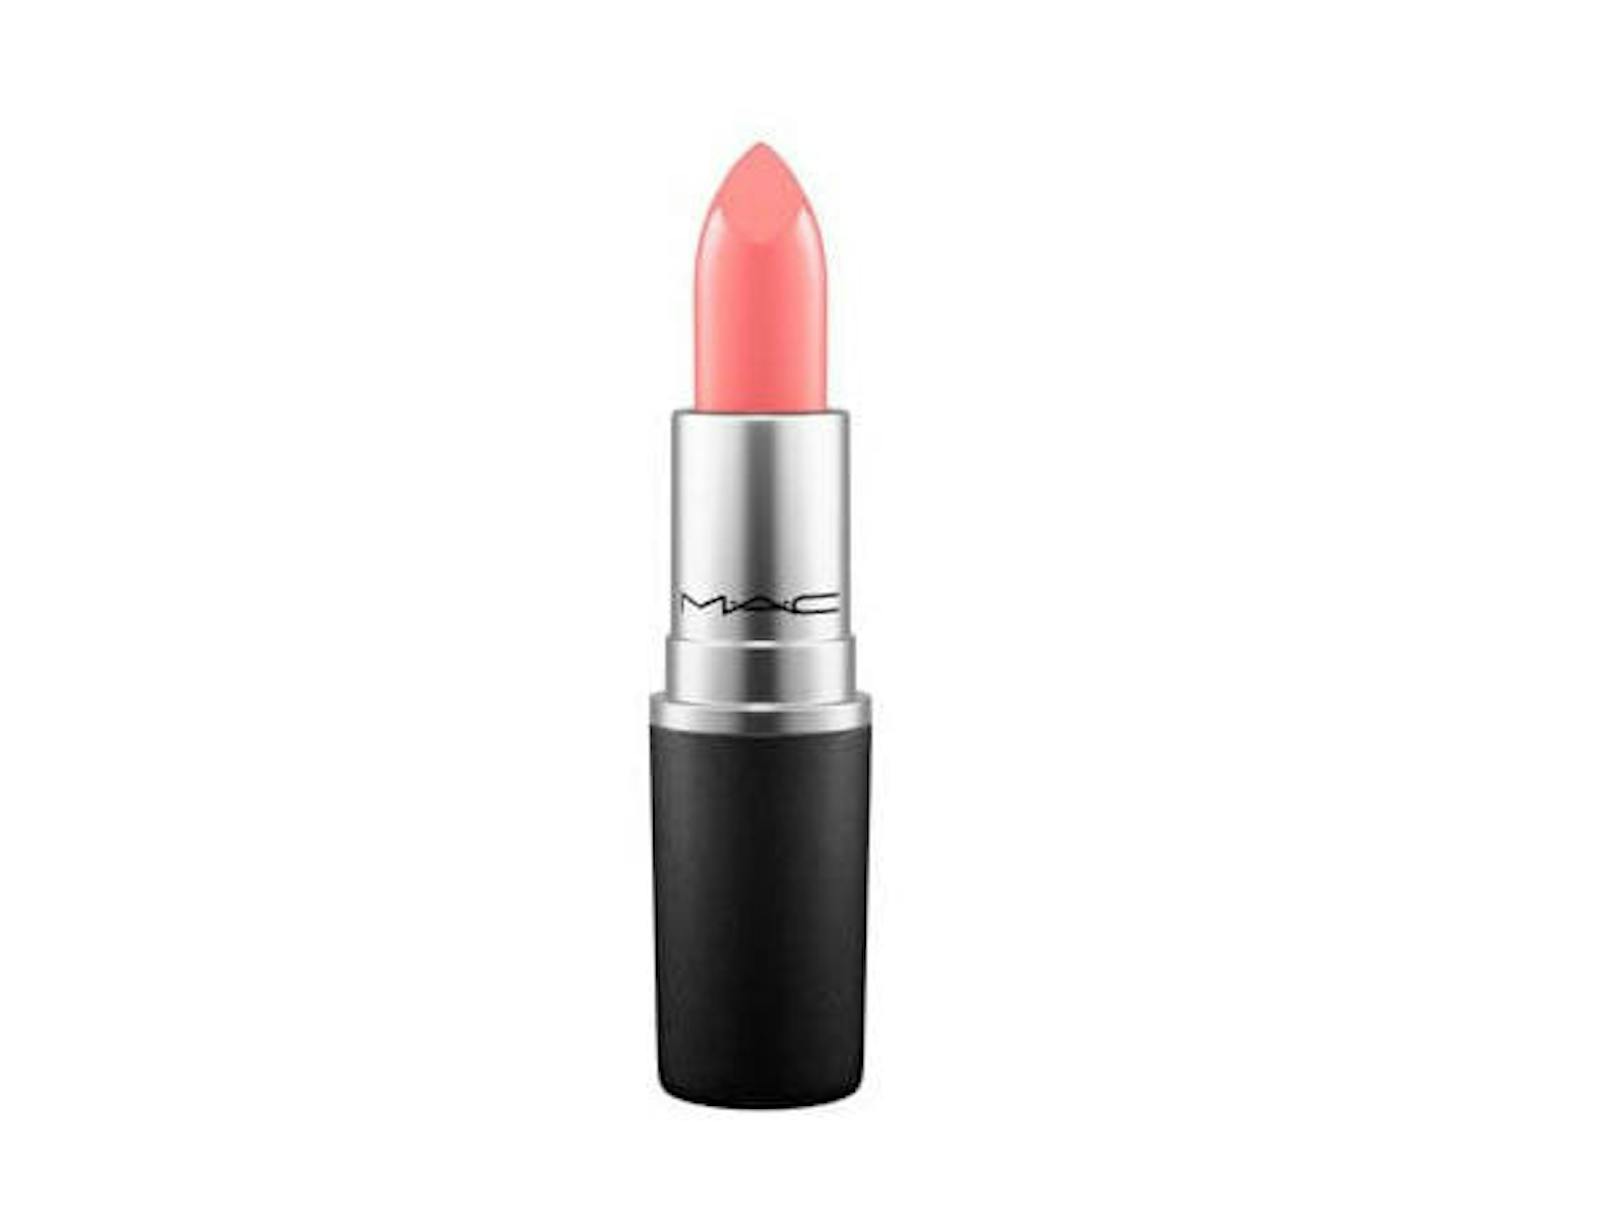 Cremesheen-Lippenstift von MAC in der Farbe "Coral Bliss" um rund 21 Euro.